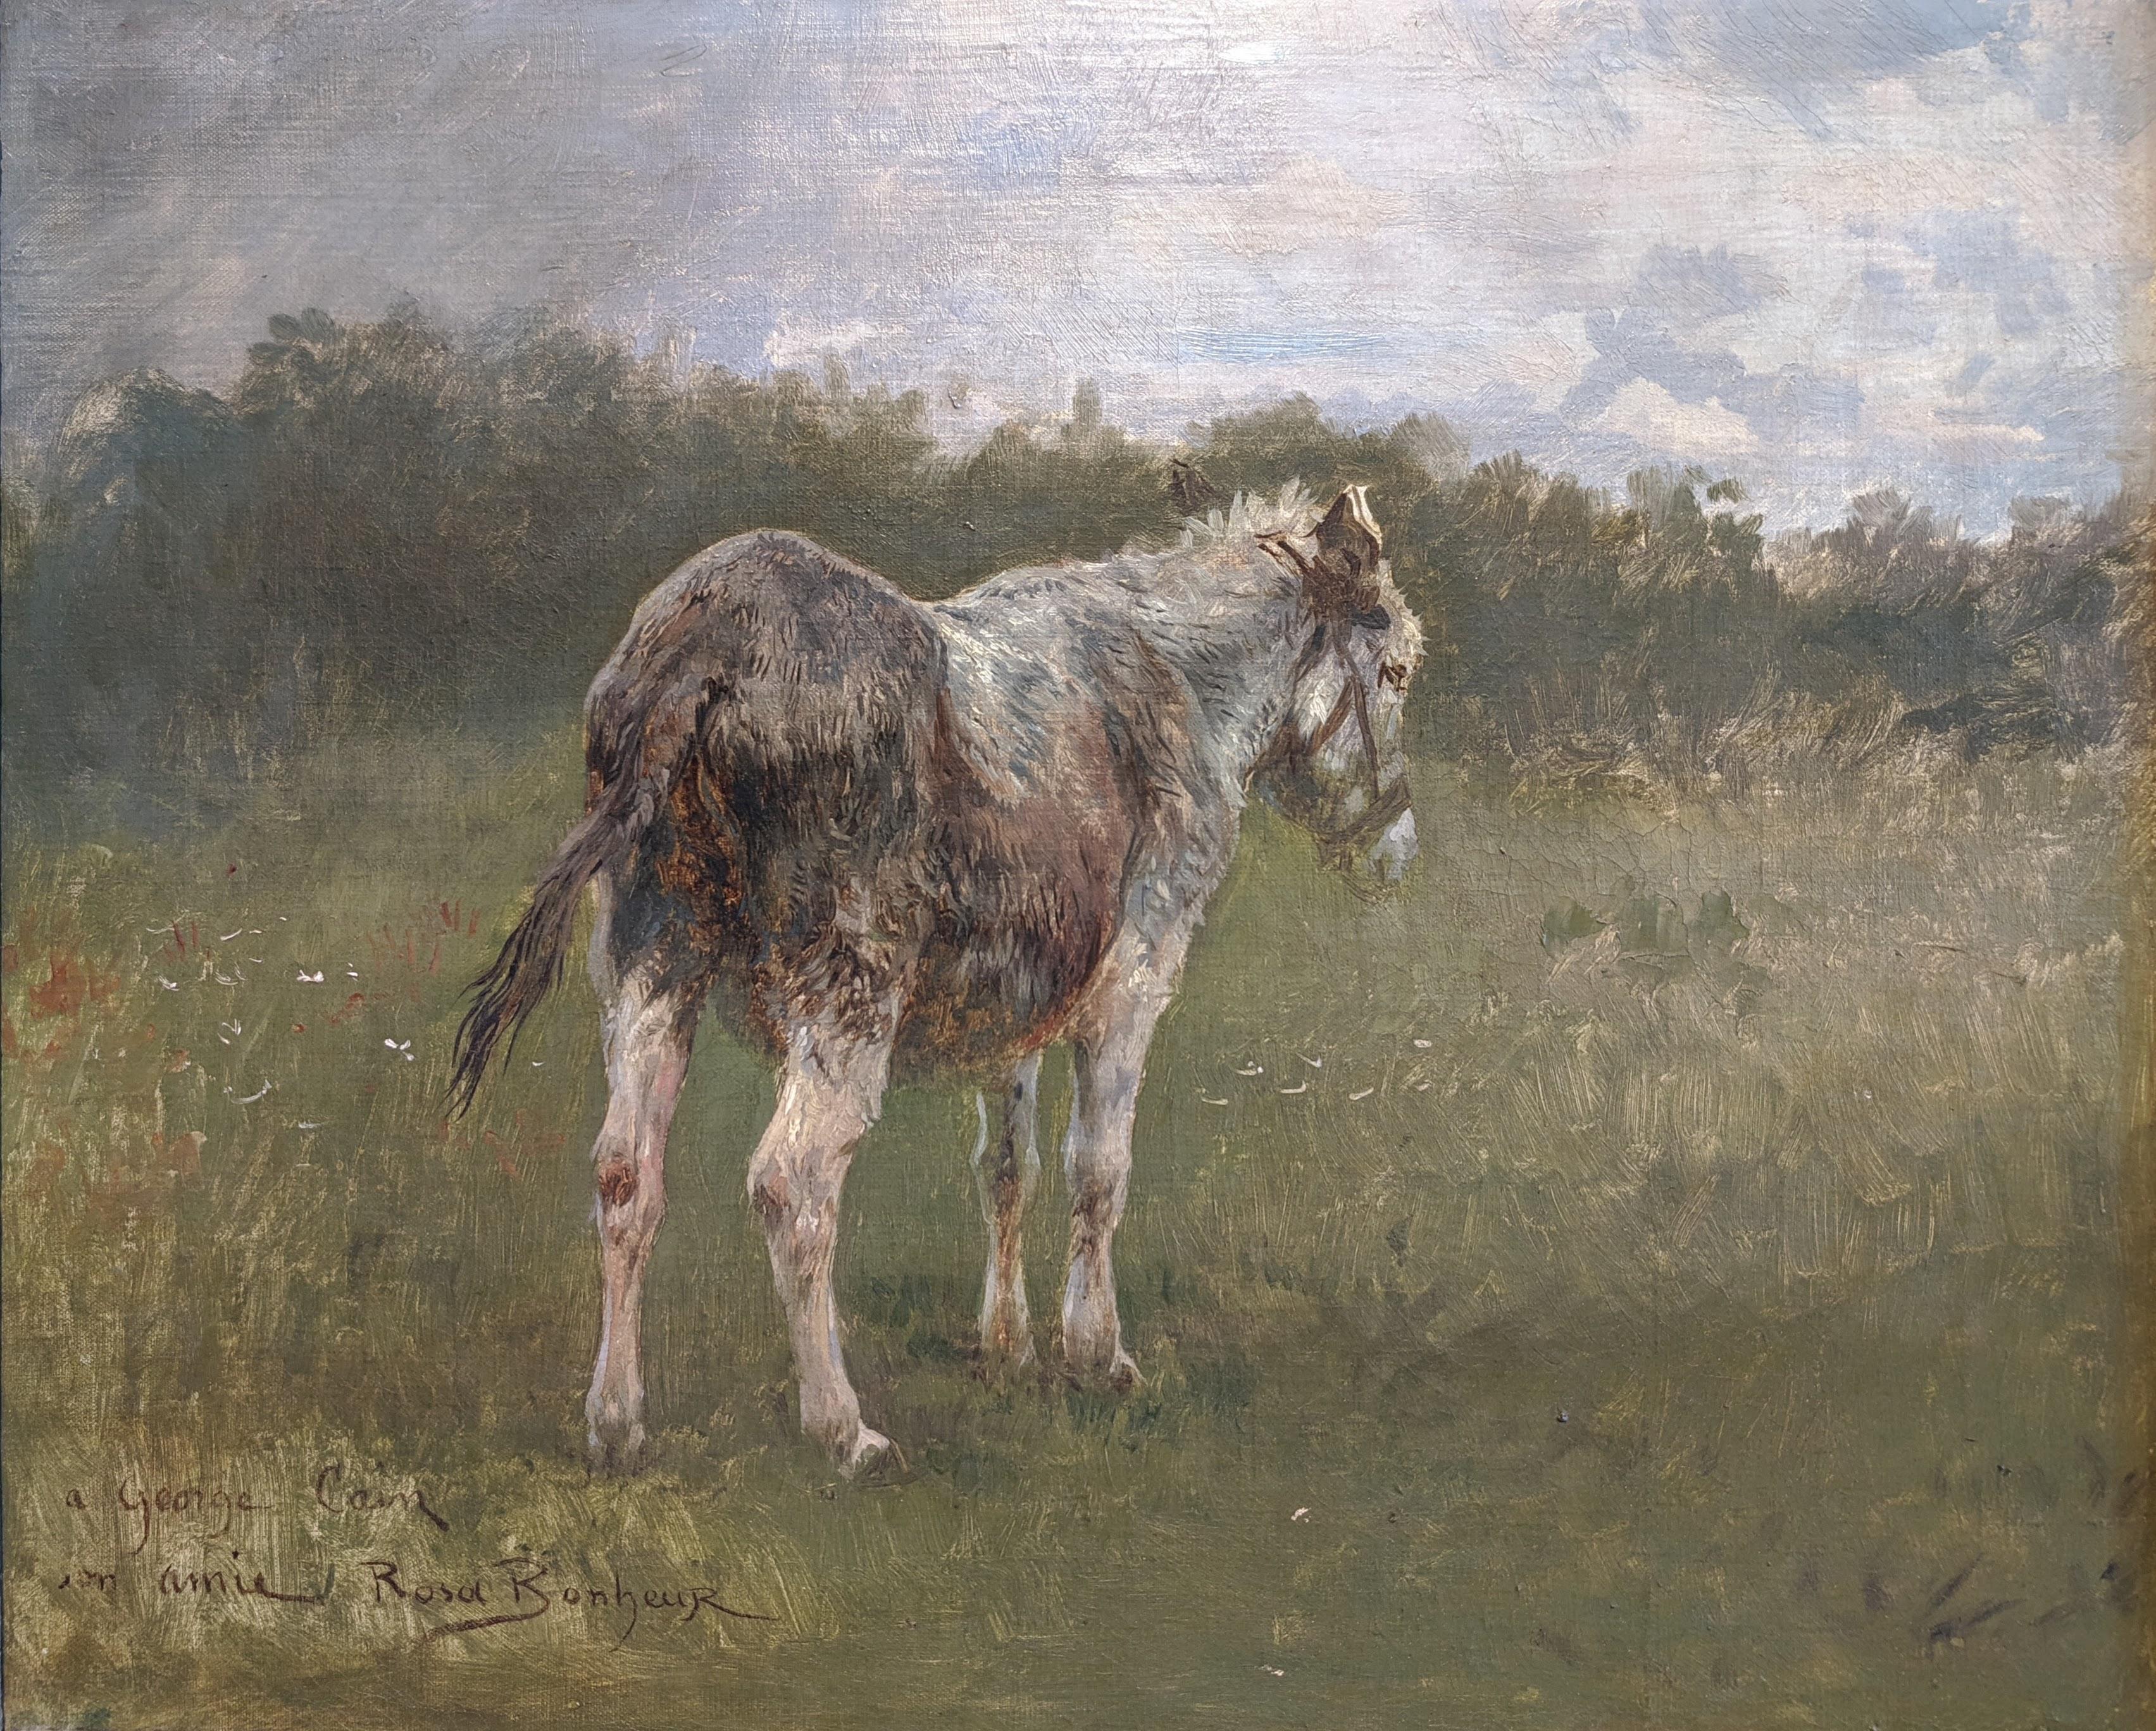 donkey over horse painting